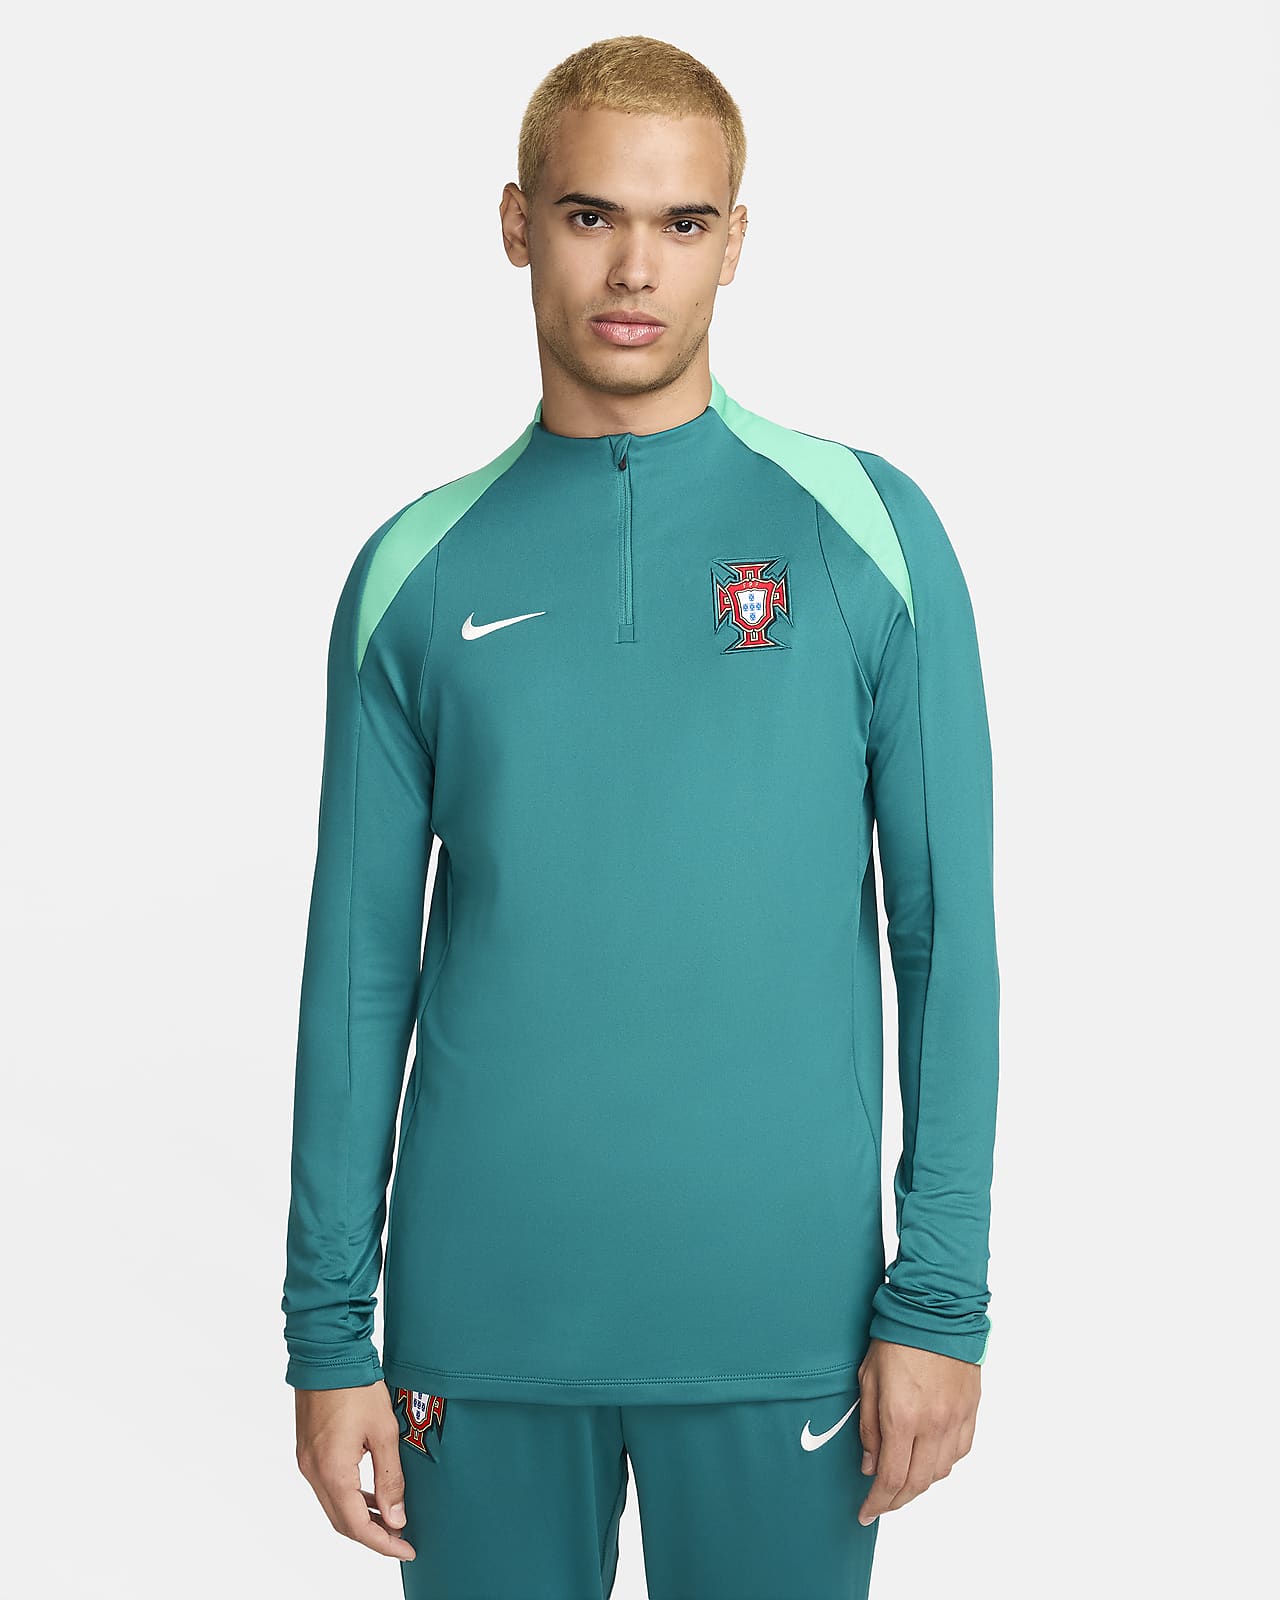 Ανδρική ποδοσφαιρική μπλούζα προπόνησης Nike Dri-FIT Πορτογαλία Strike